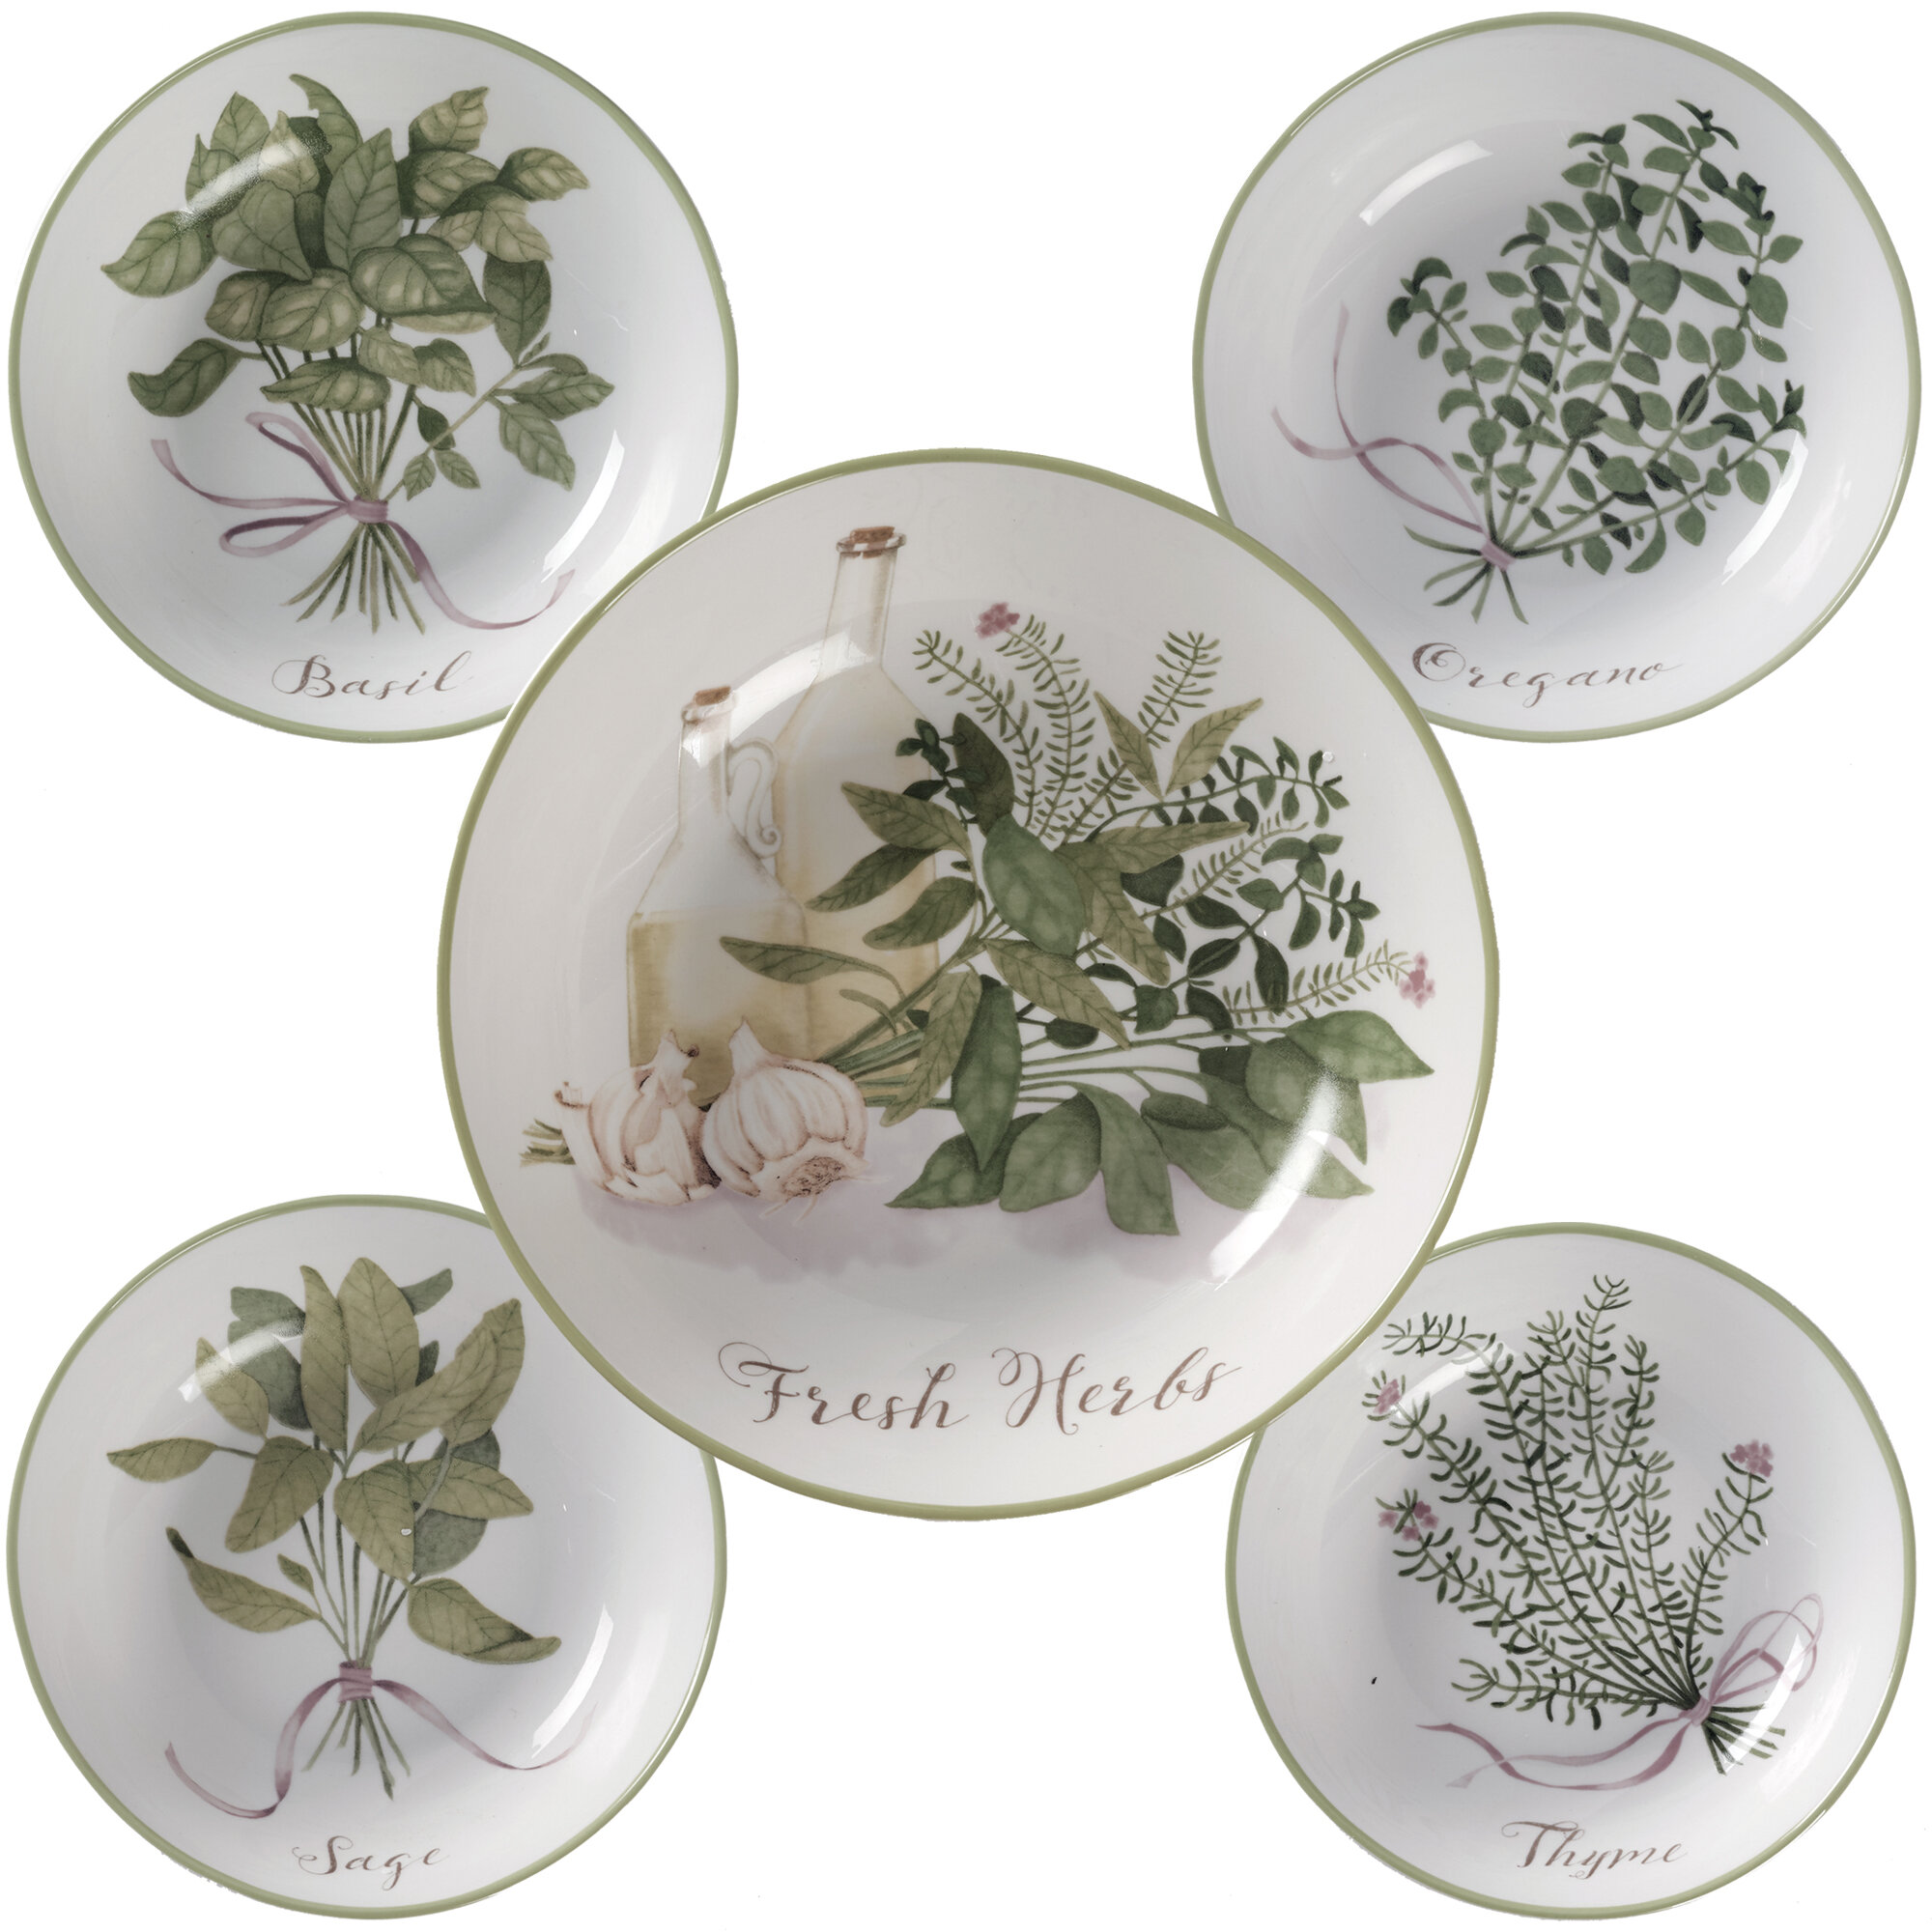 https://assets.wfcdn.com/im/15438387/compr-r85/3632/36321844/certified-international-fresh-herbs-pasta-bowl-set.jpg